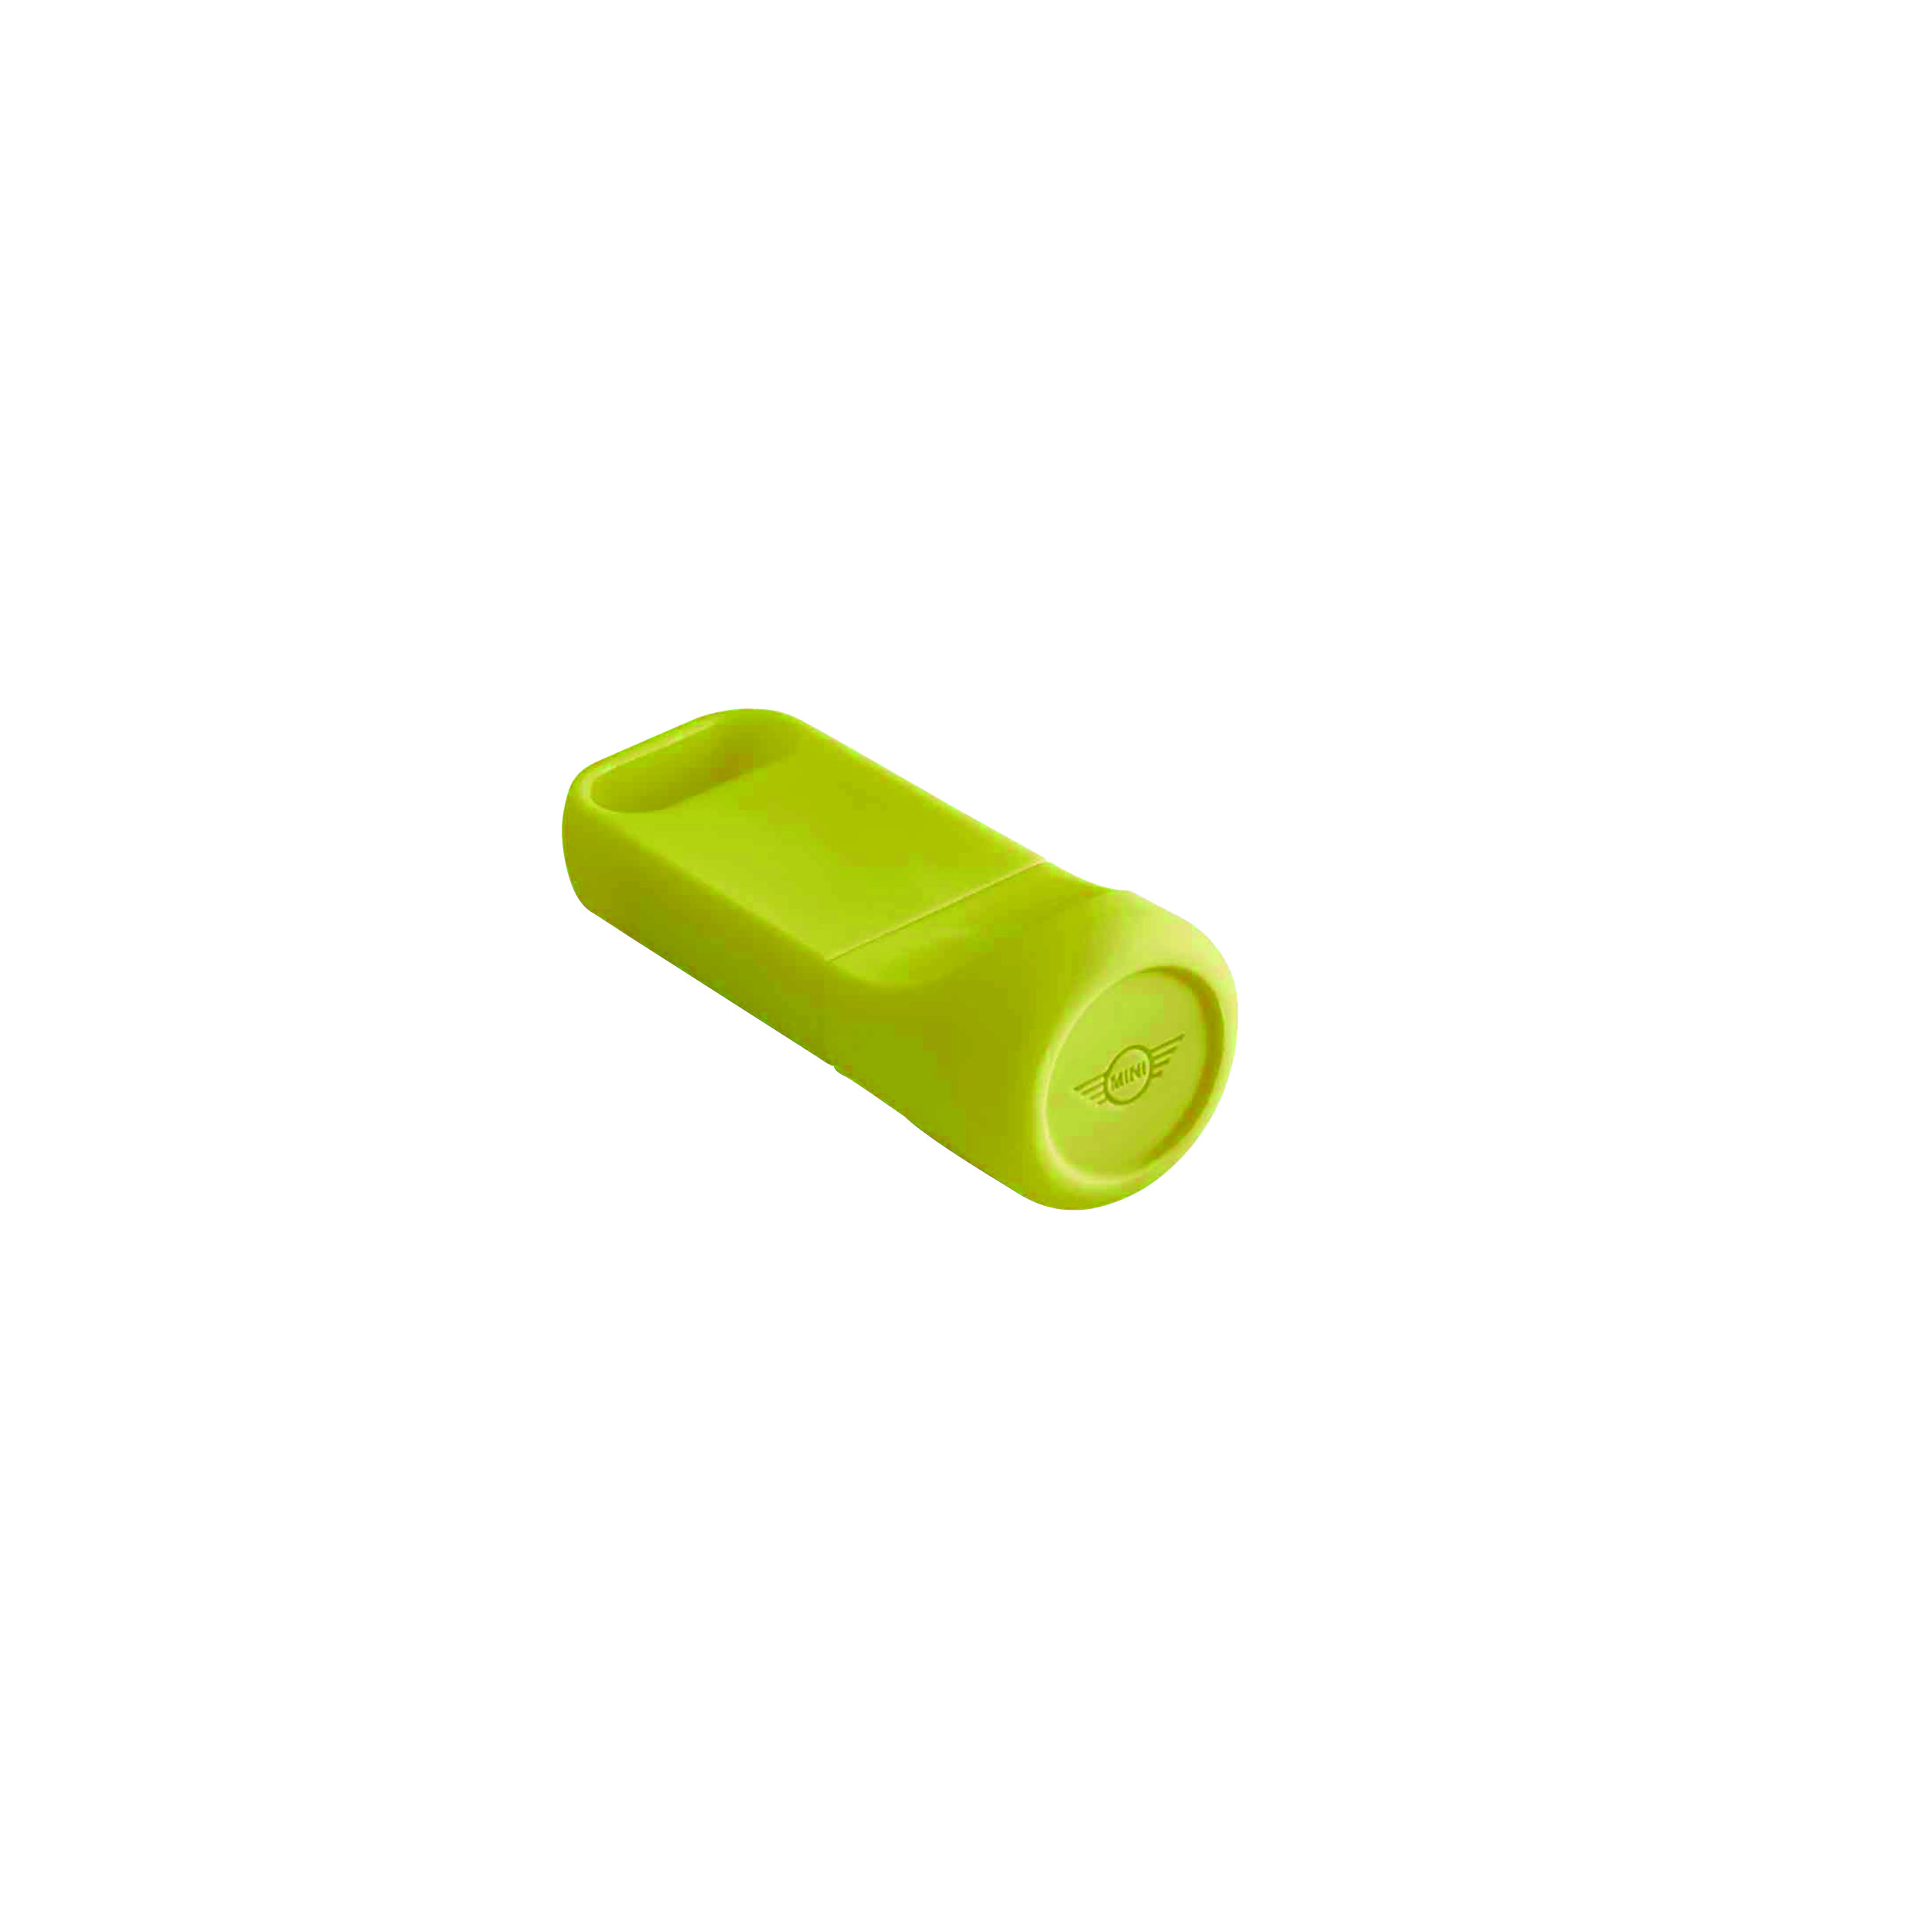 MINI USB KEY Energetic Yellow